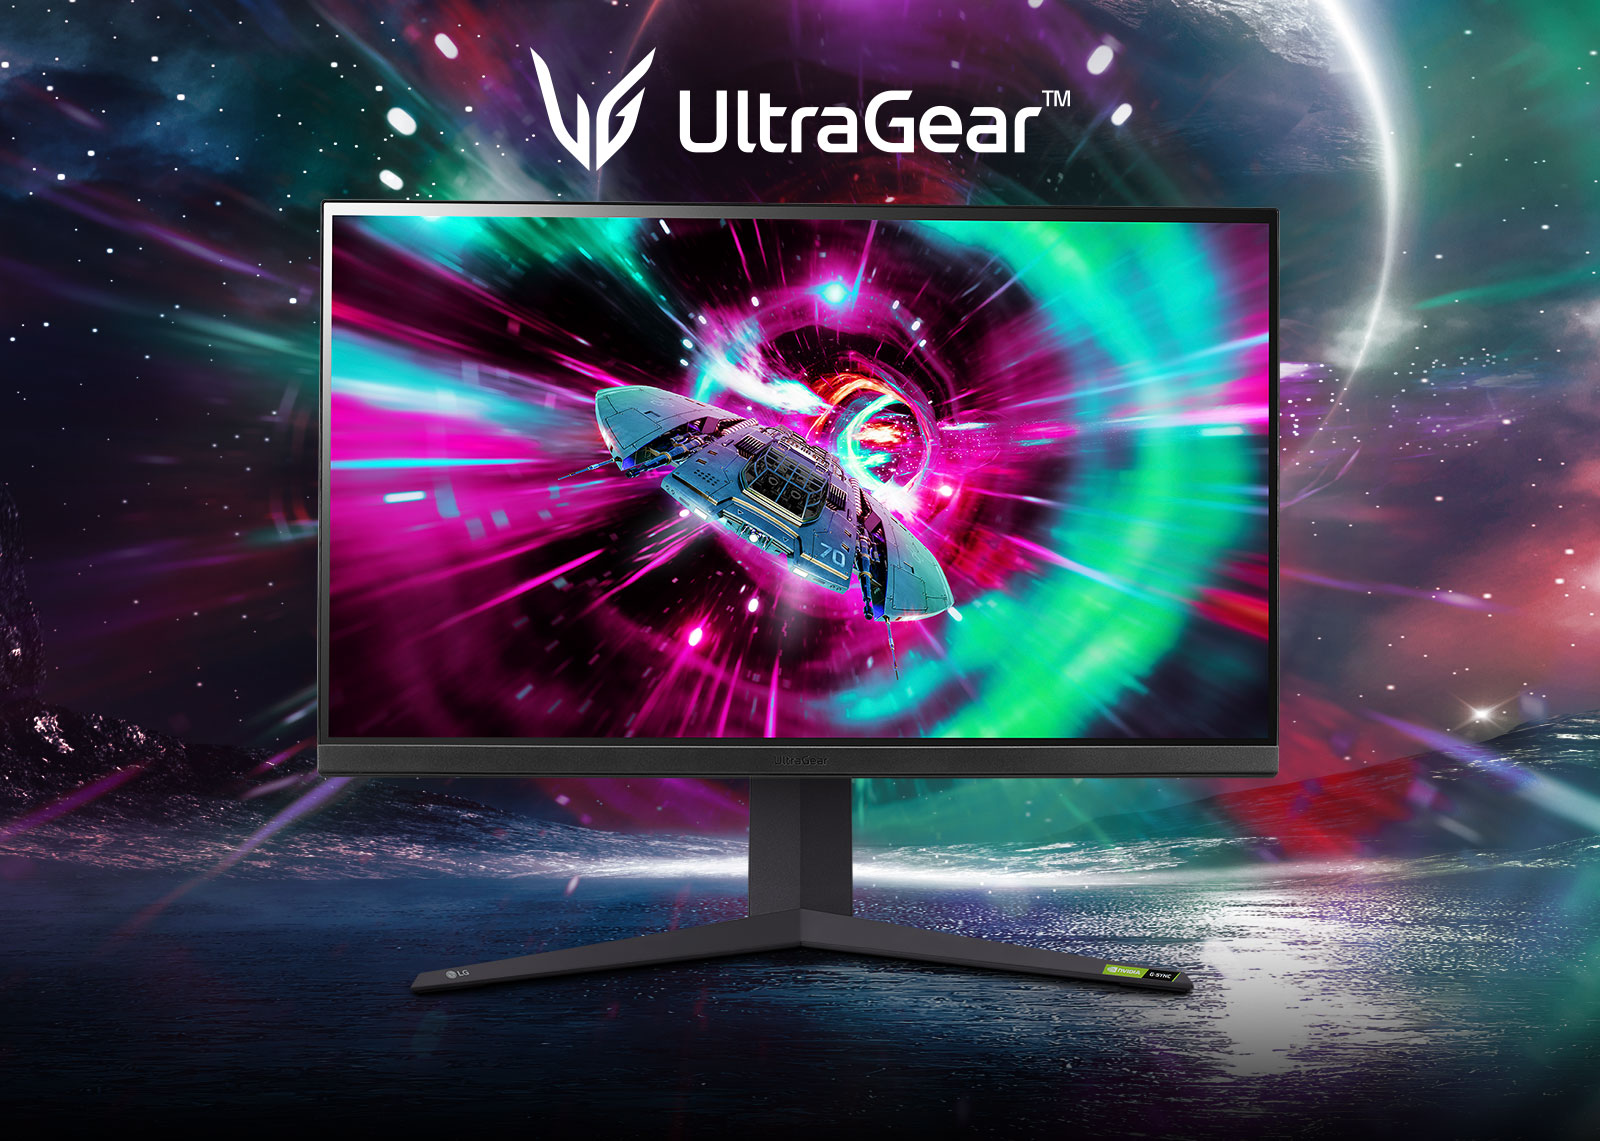 LG 32GR93U-B 32 LG UltraGear™ UHD Gaming Monitor with 144Hz Refresh Rate